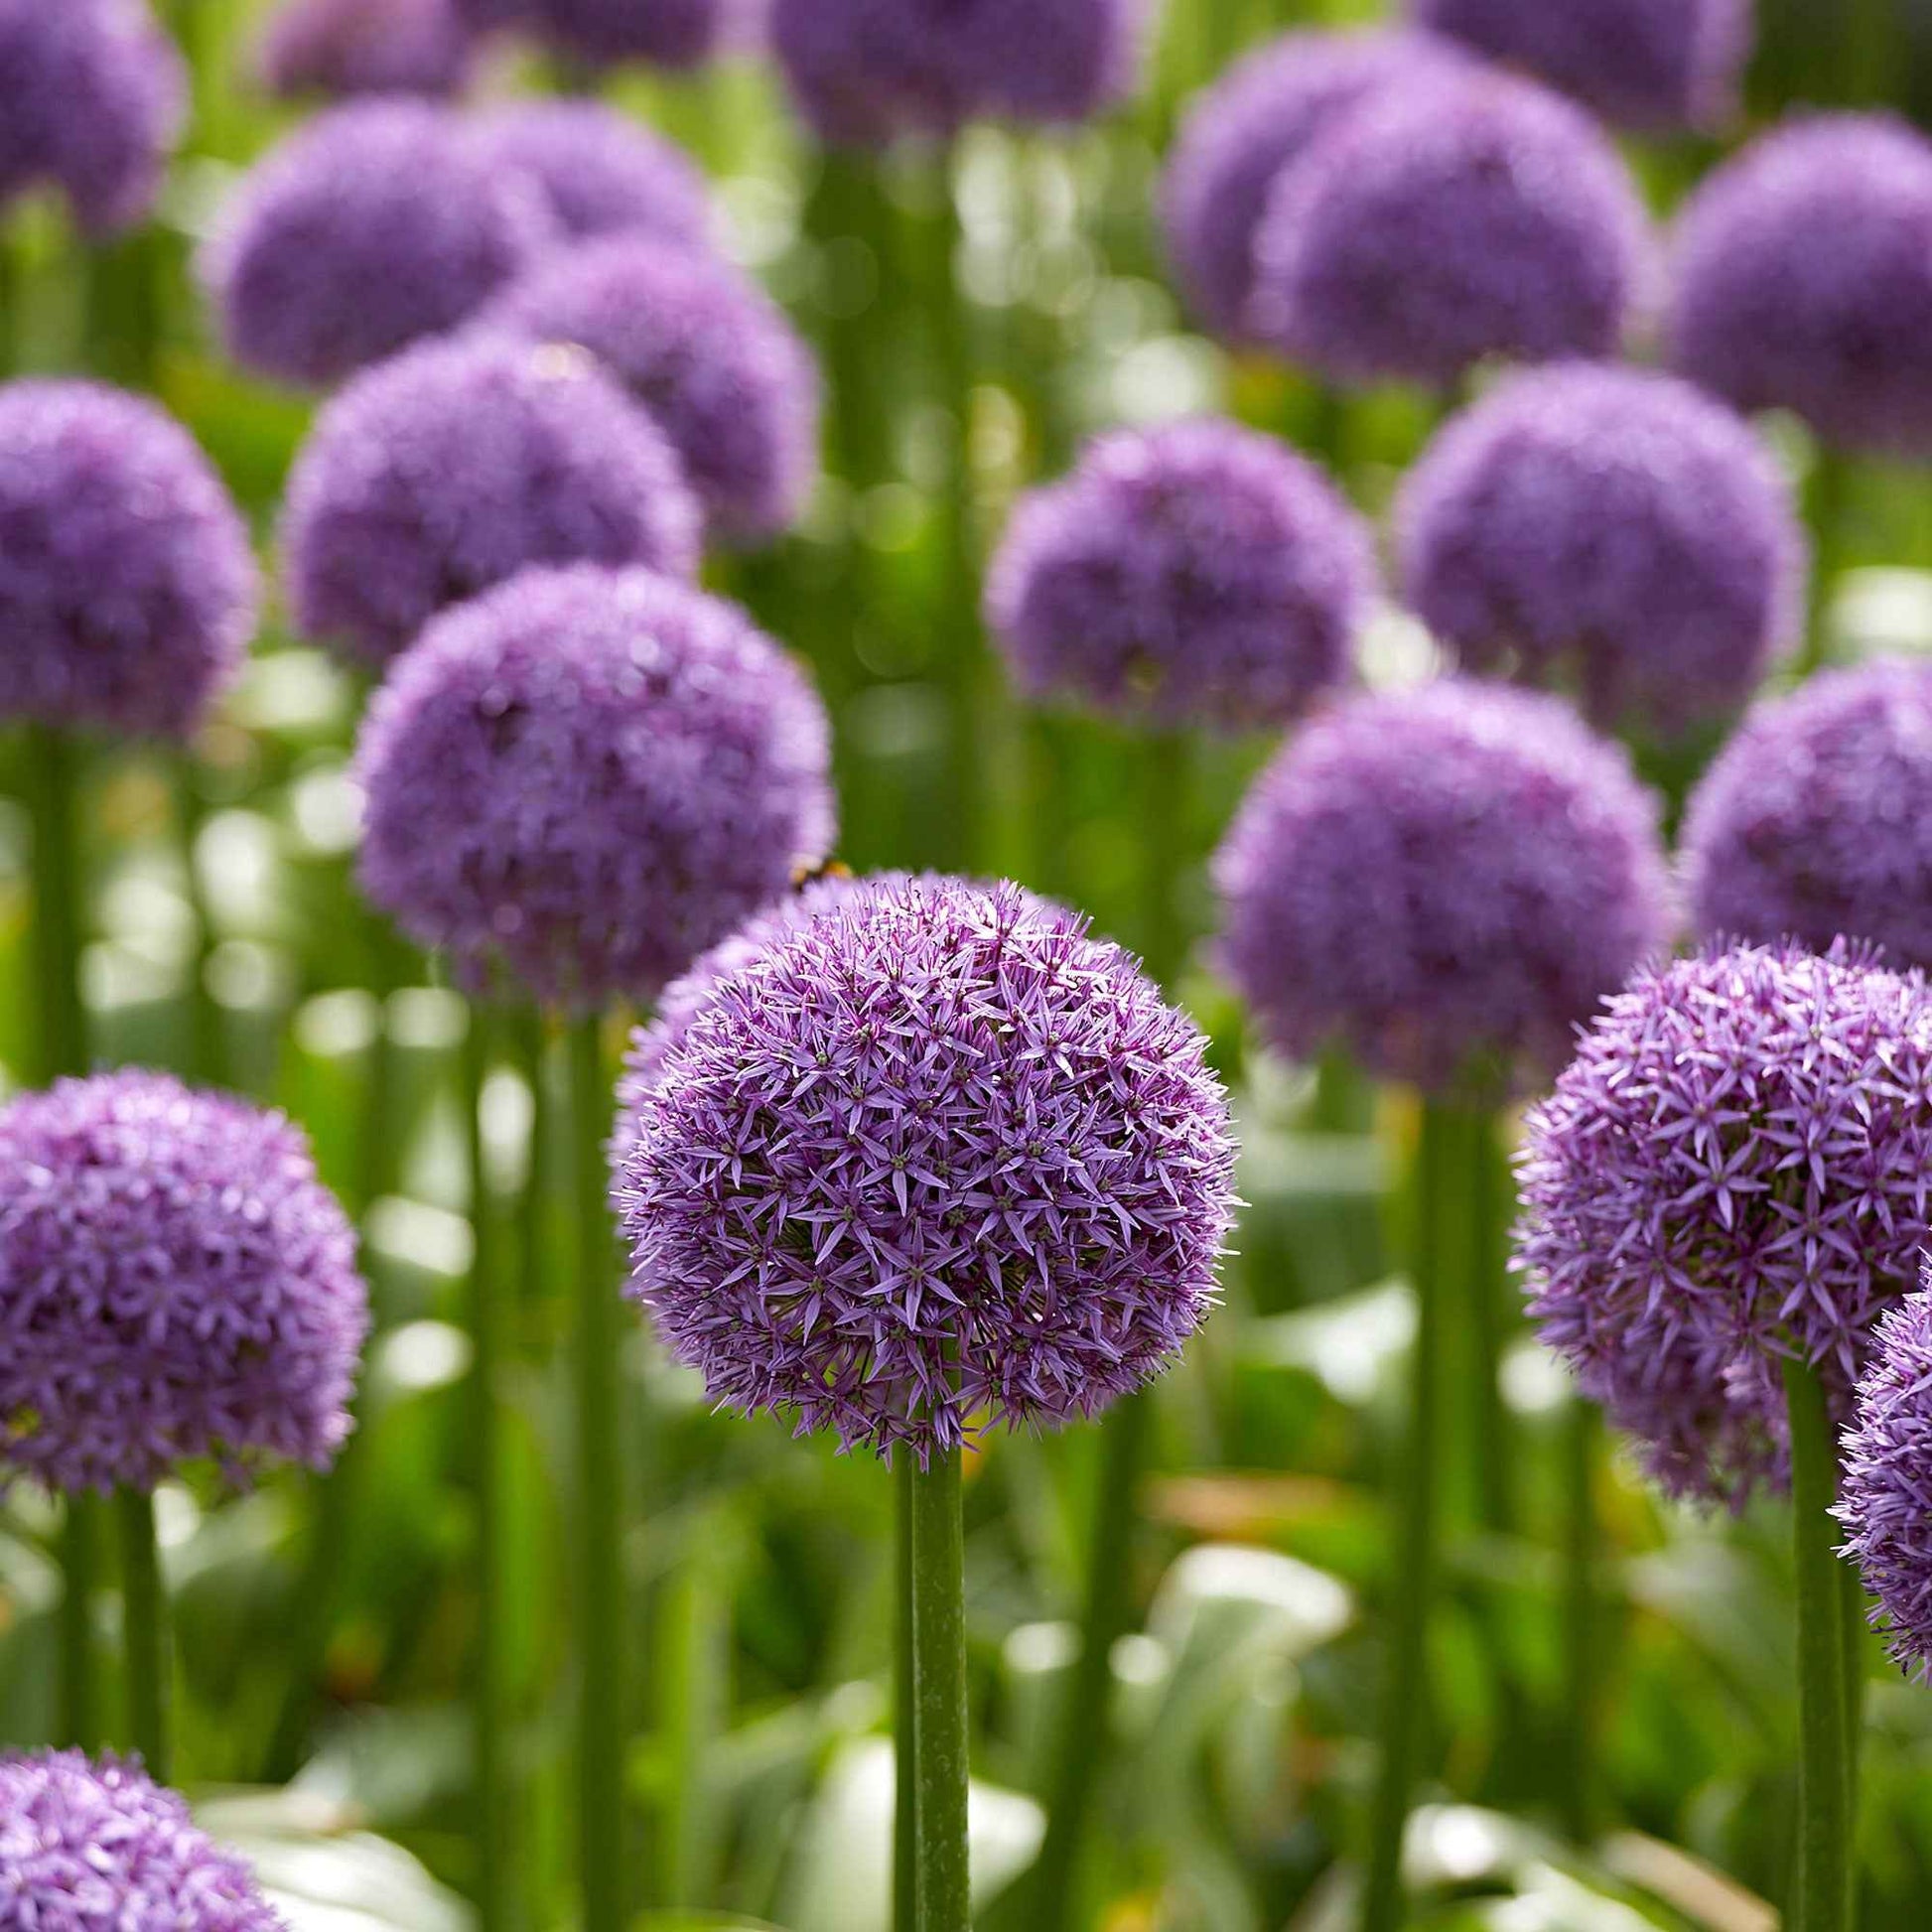 Allium Allium 'Globemaster' violet - Alliums